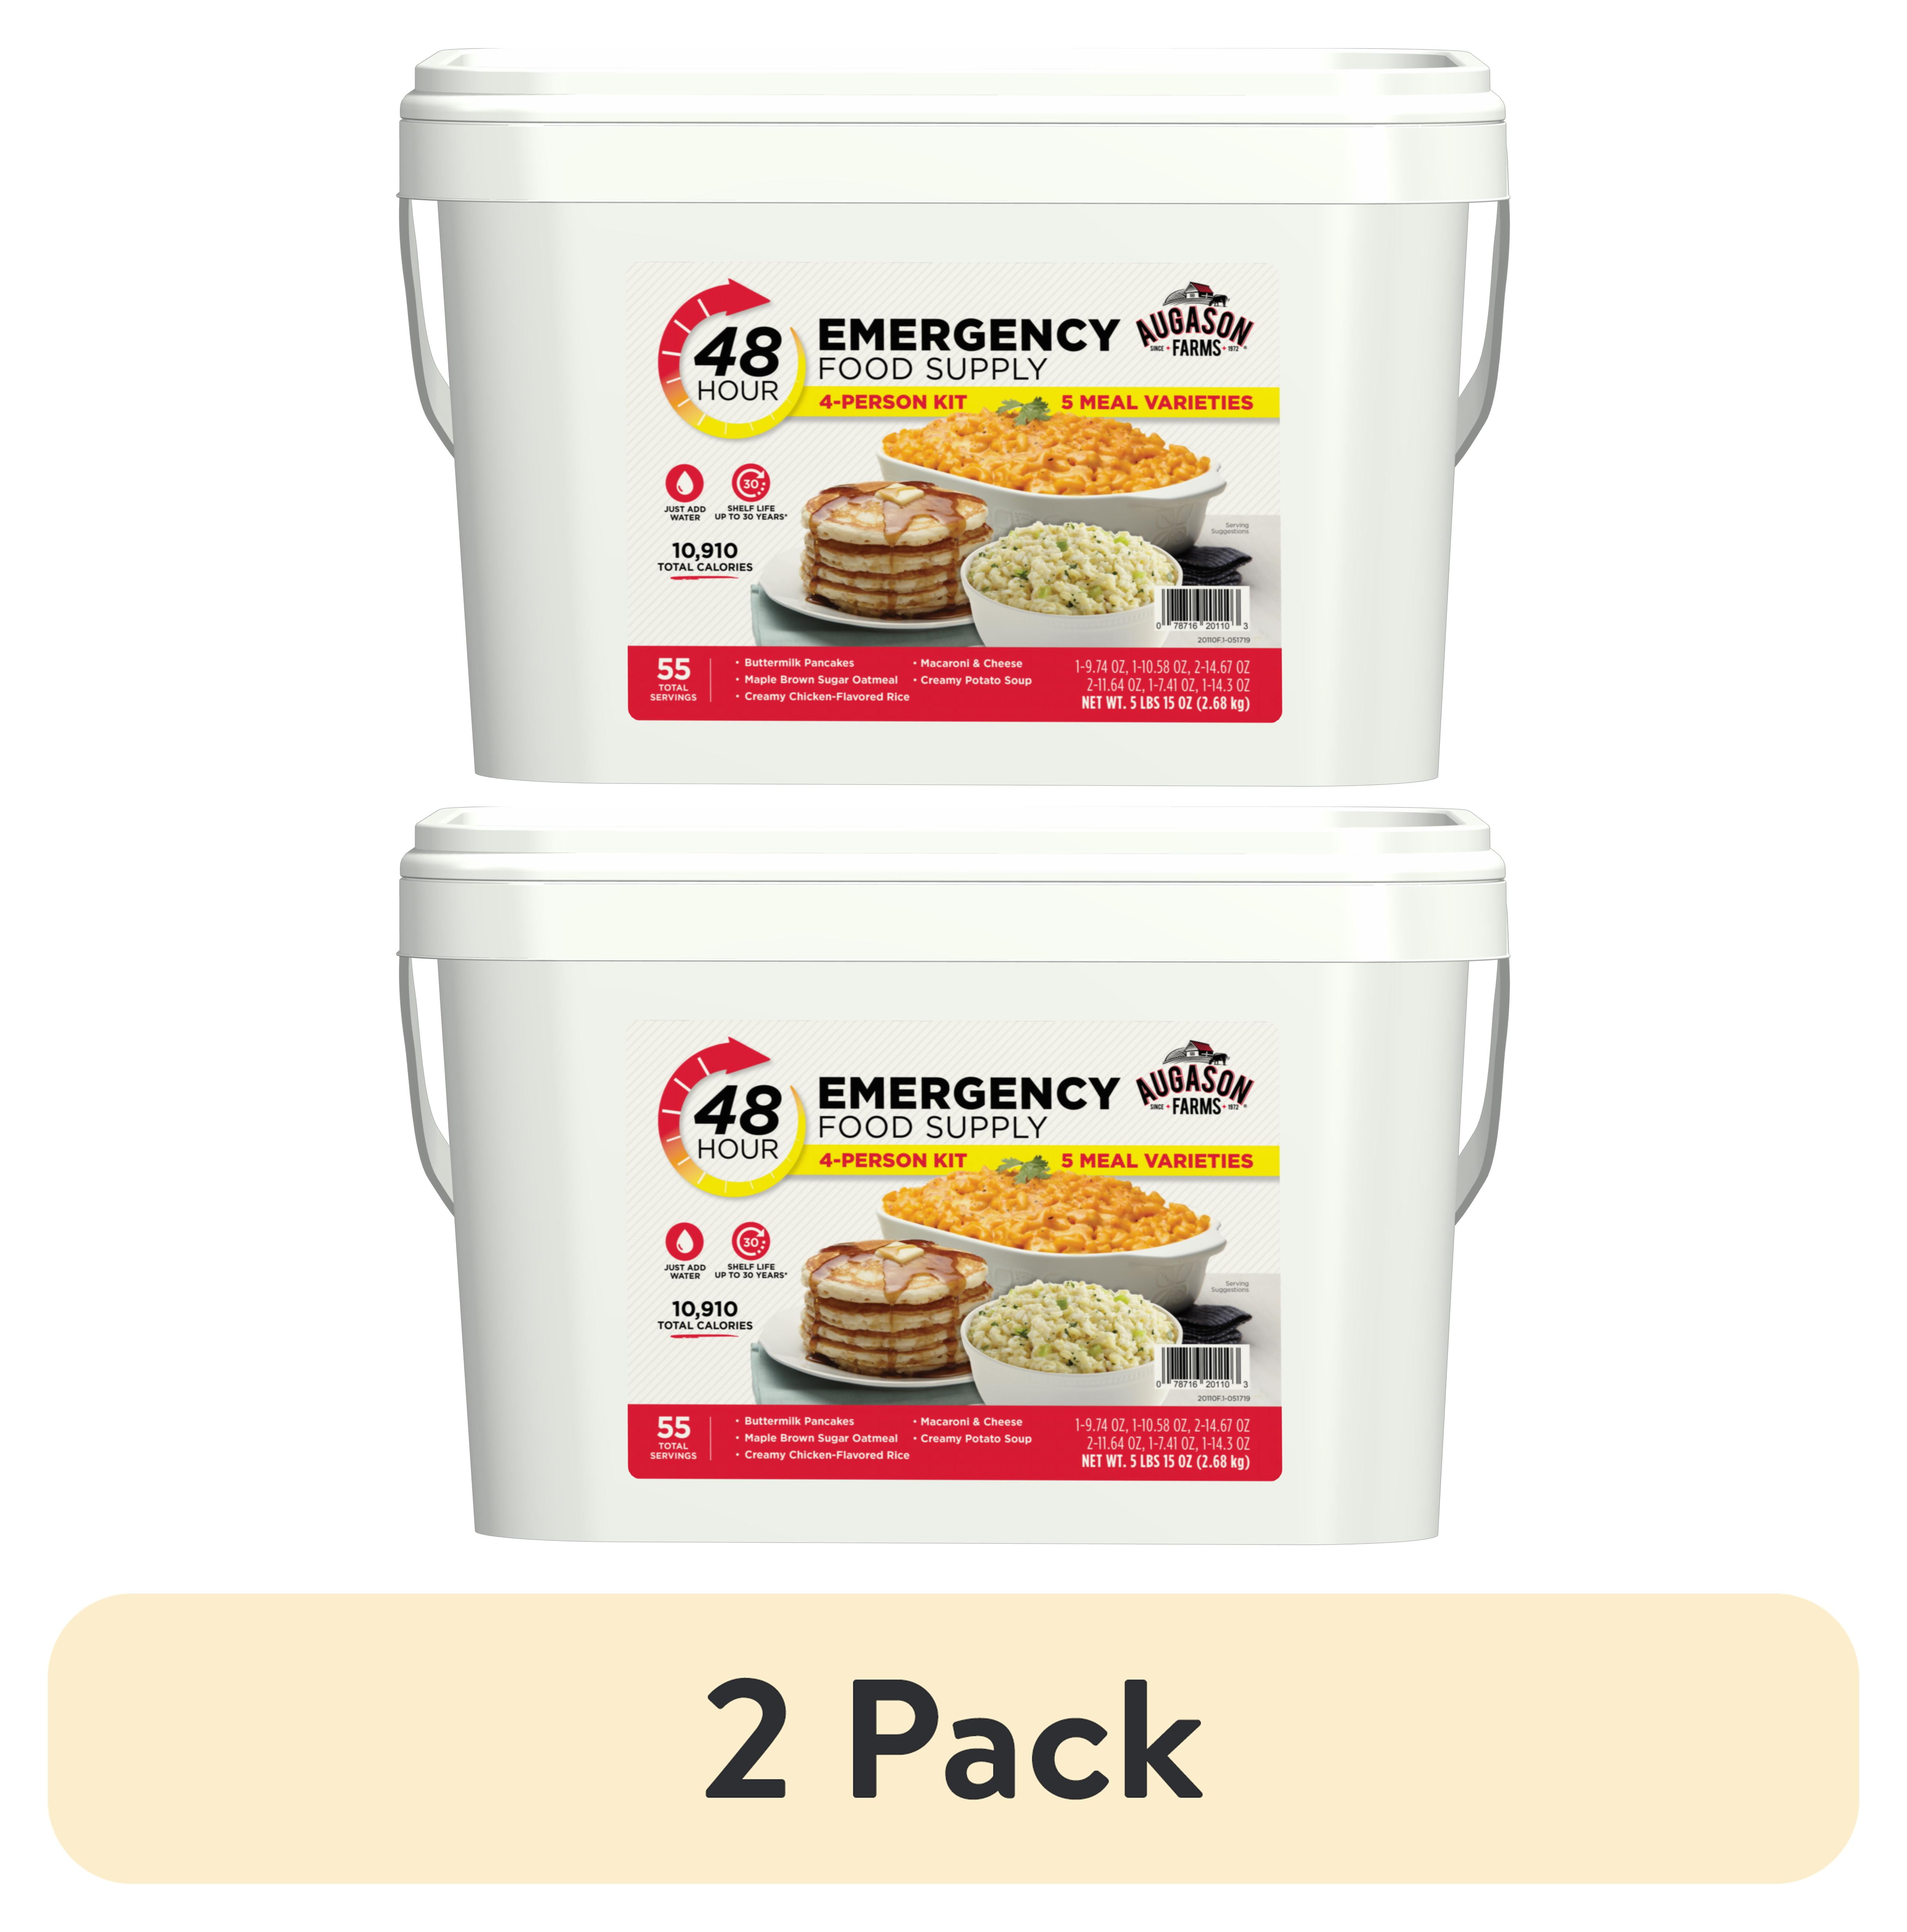 Foodsaver Quart Bags - 44 Count - Albertsons